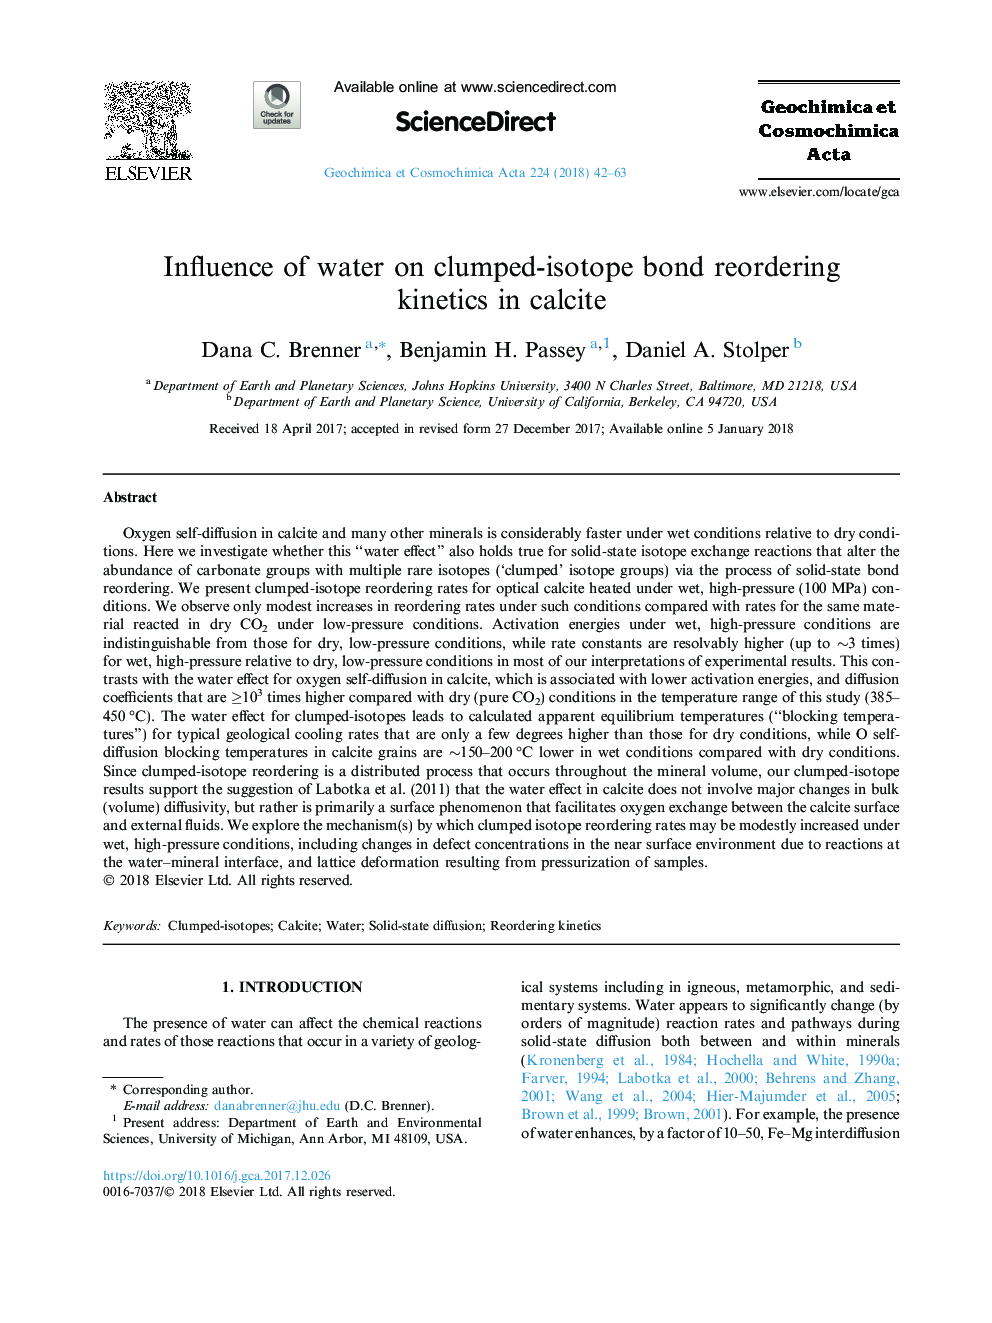 تأثیر آب بر روی سینتیک بازخوانی باند ایزوتوپی در کلسیت